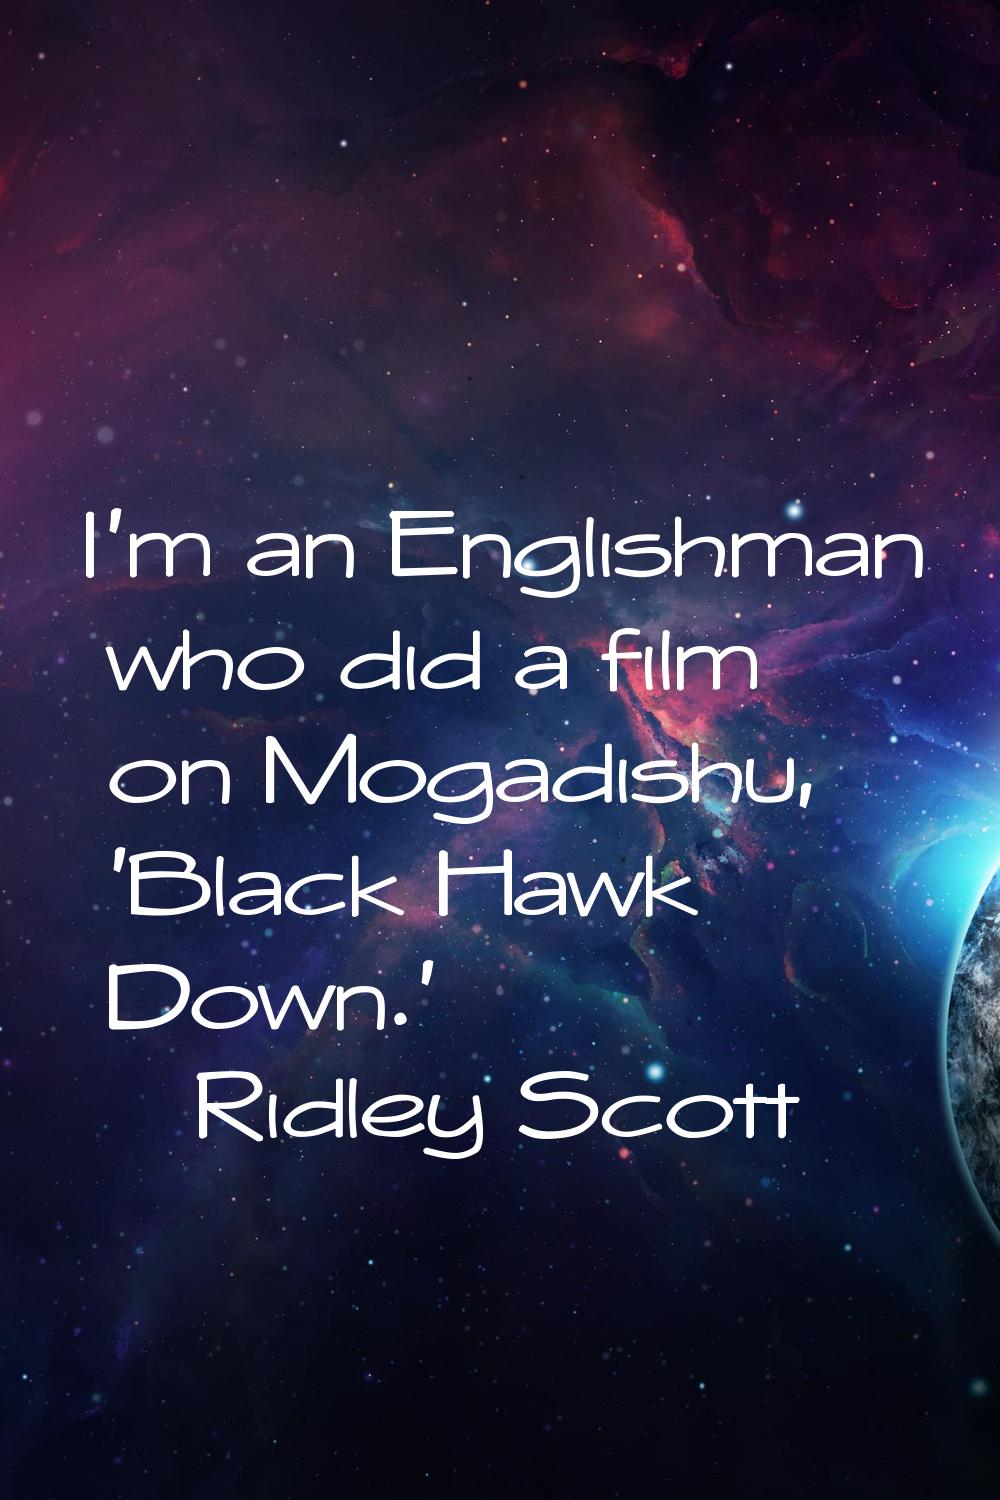 I'm an Englishman who did a film on Mogadishu, 'Black Hawk Down.'